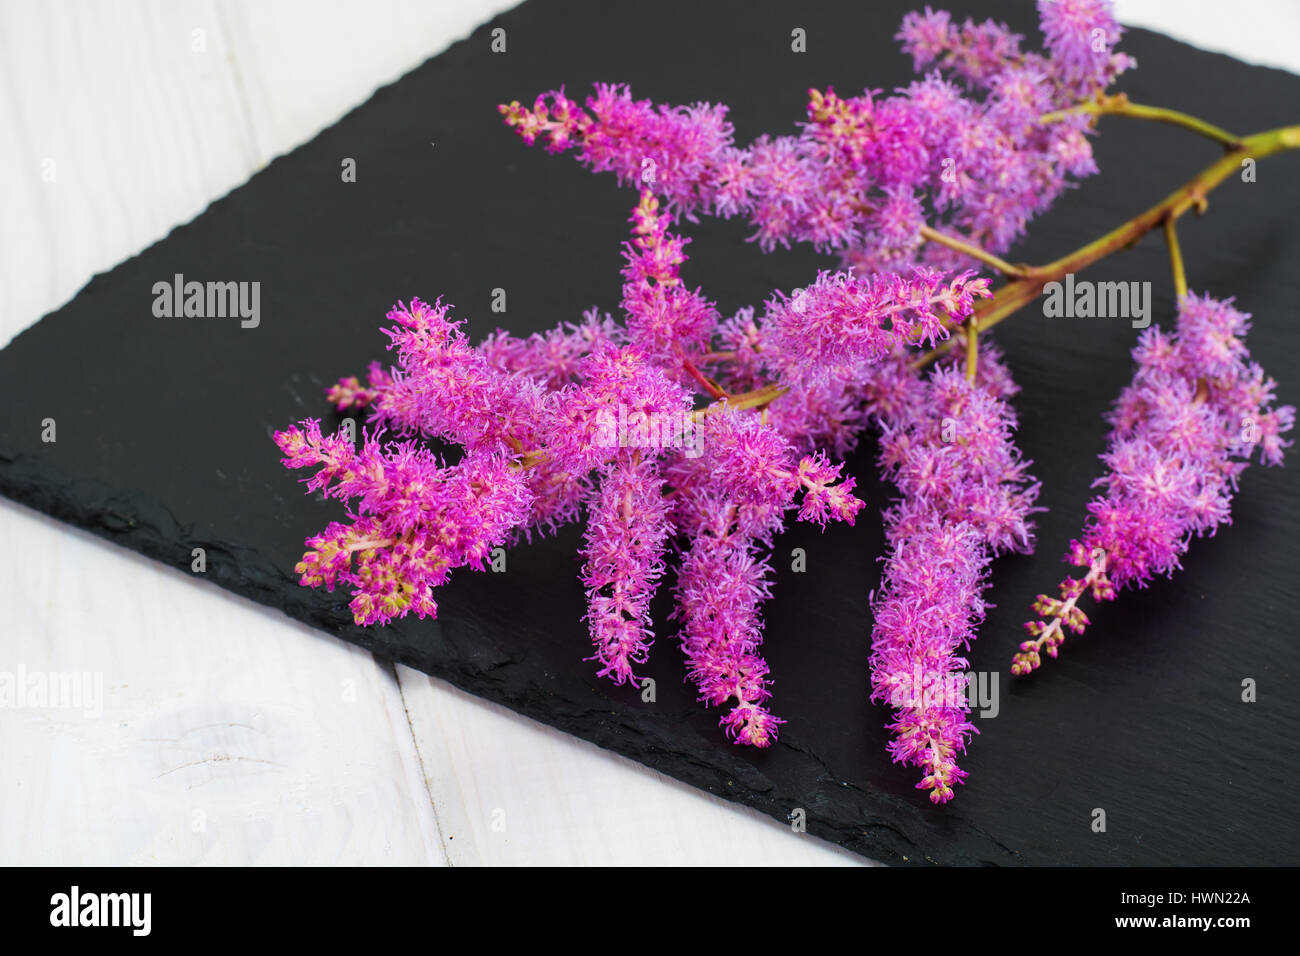 Astilbe cut flower Stock Photo